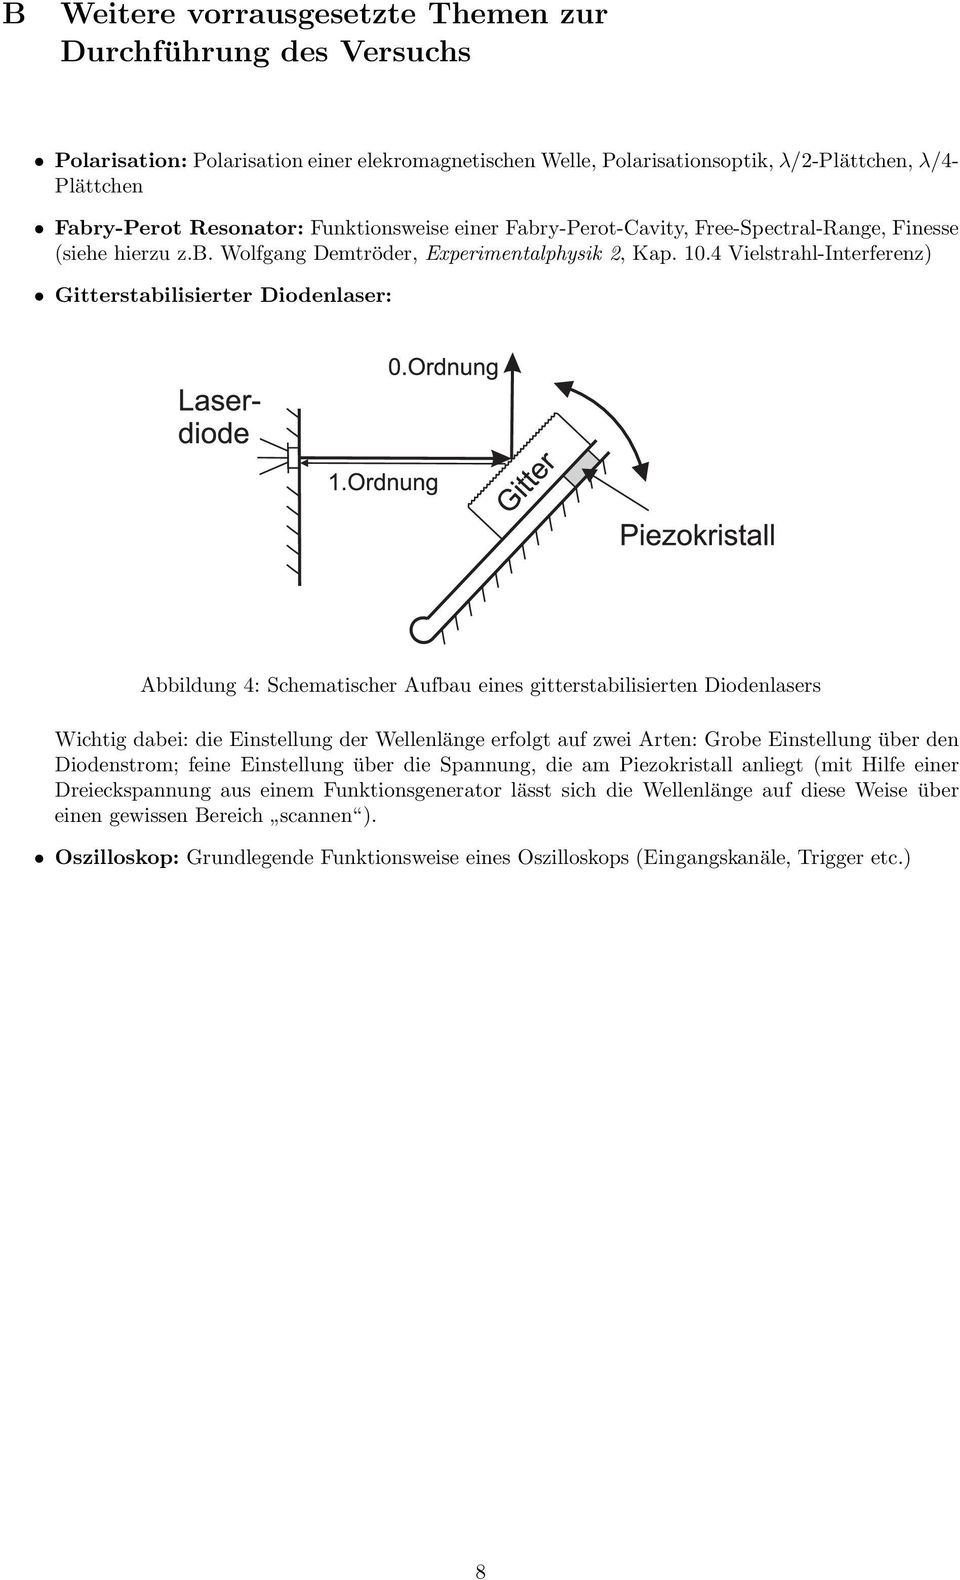 4 Vielstrahl-Interferenz) Gitterstabilisierter Diodenlaser: Abbildung 4: Schematischer Aufbau eines gitterstabilisierten Diodenlasers Wichtig dabei: die Einstellung der Wellenlänge erfolgt auf zwei